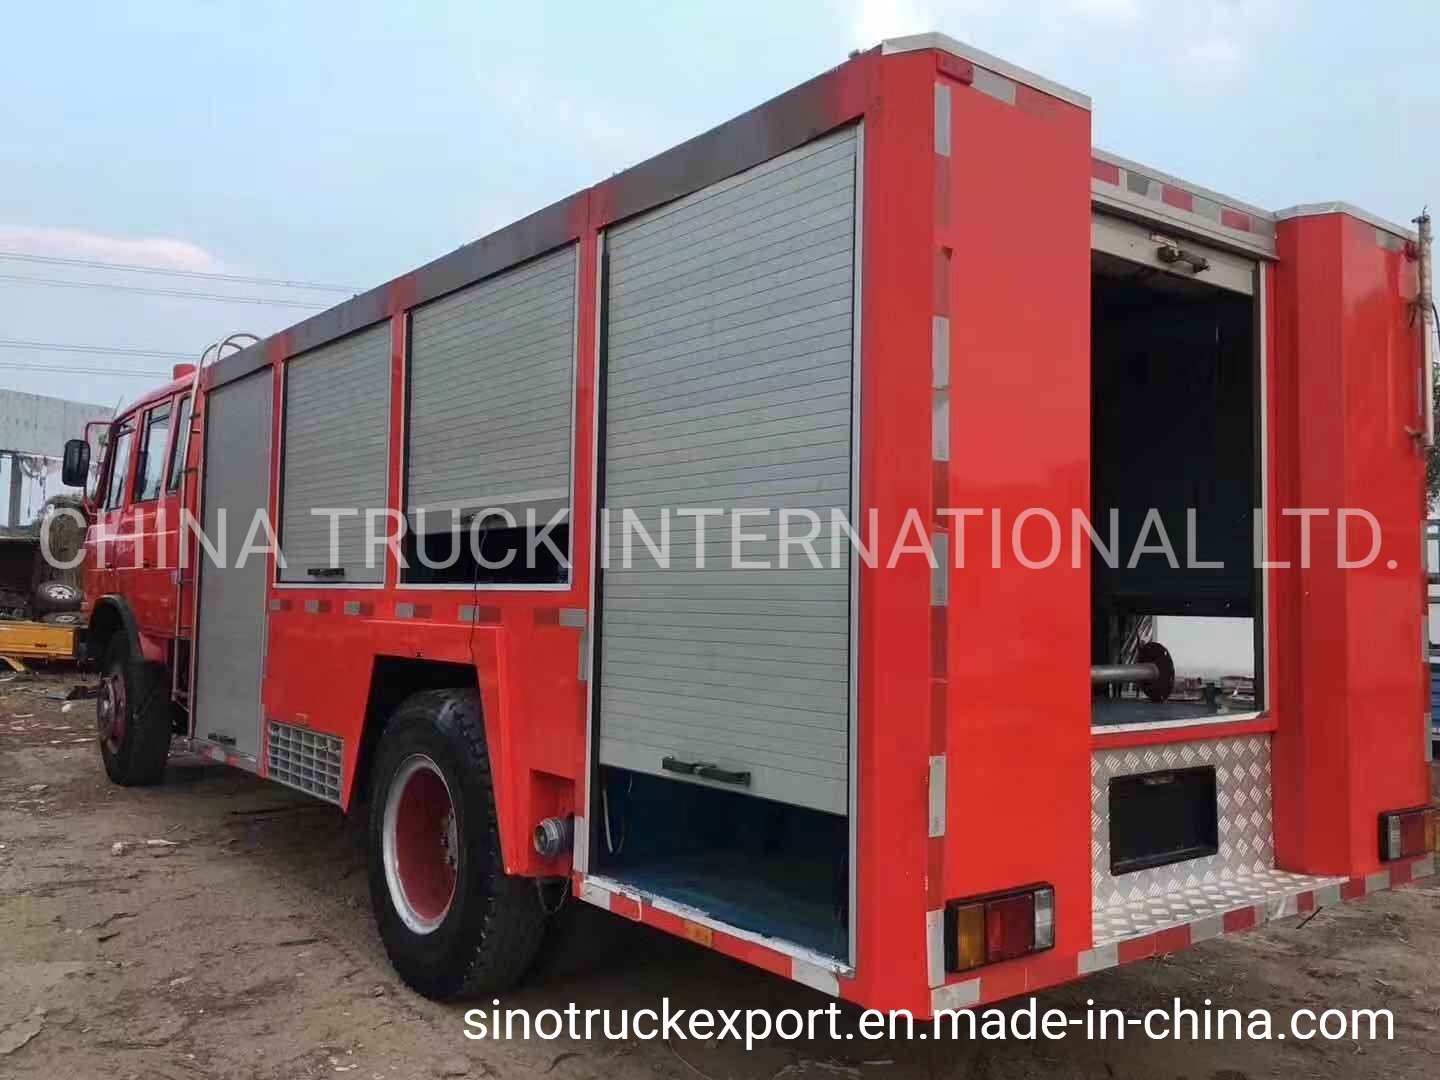 International Fire Truck Wallpapers